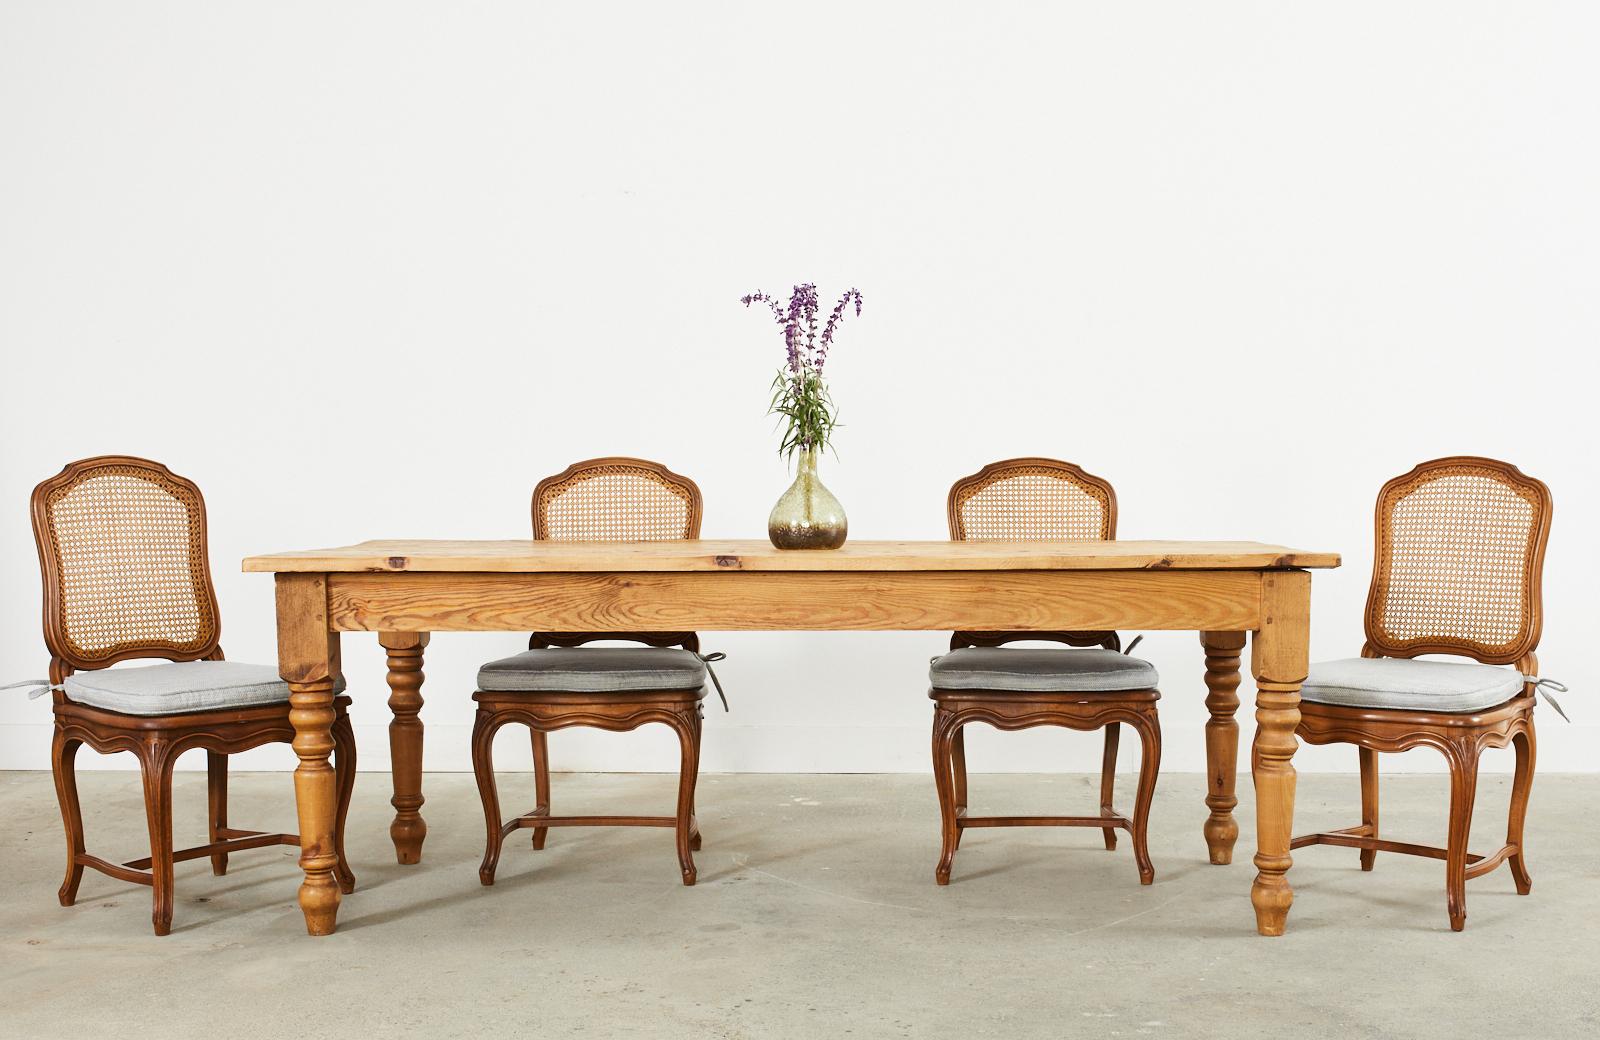 Magnifique table de salle à manger de ferme ou table de récolte en pin, fabriquée dans le style campagnard anglais. Le plateau est fabriqué à partir de bois de grange récupéré d'une épaisseur de 1 pouce avec une patine magnifiquement vieillie et une